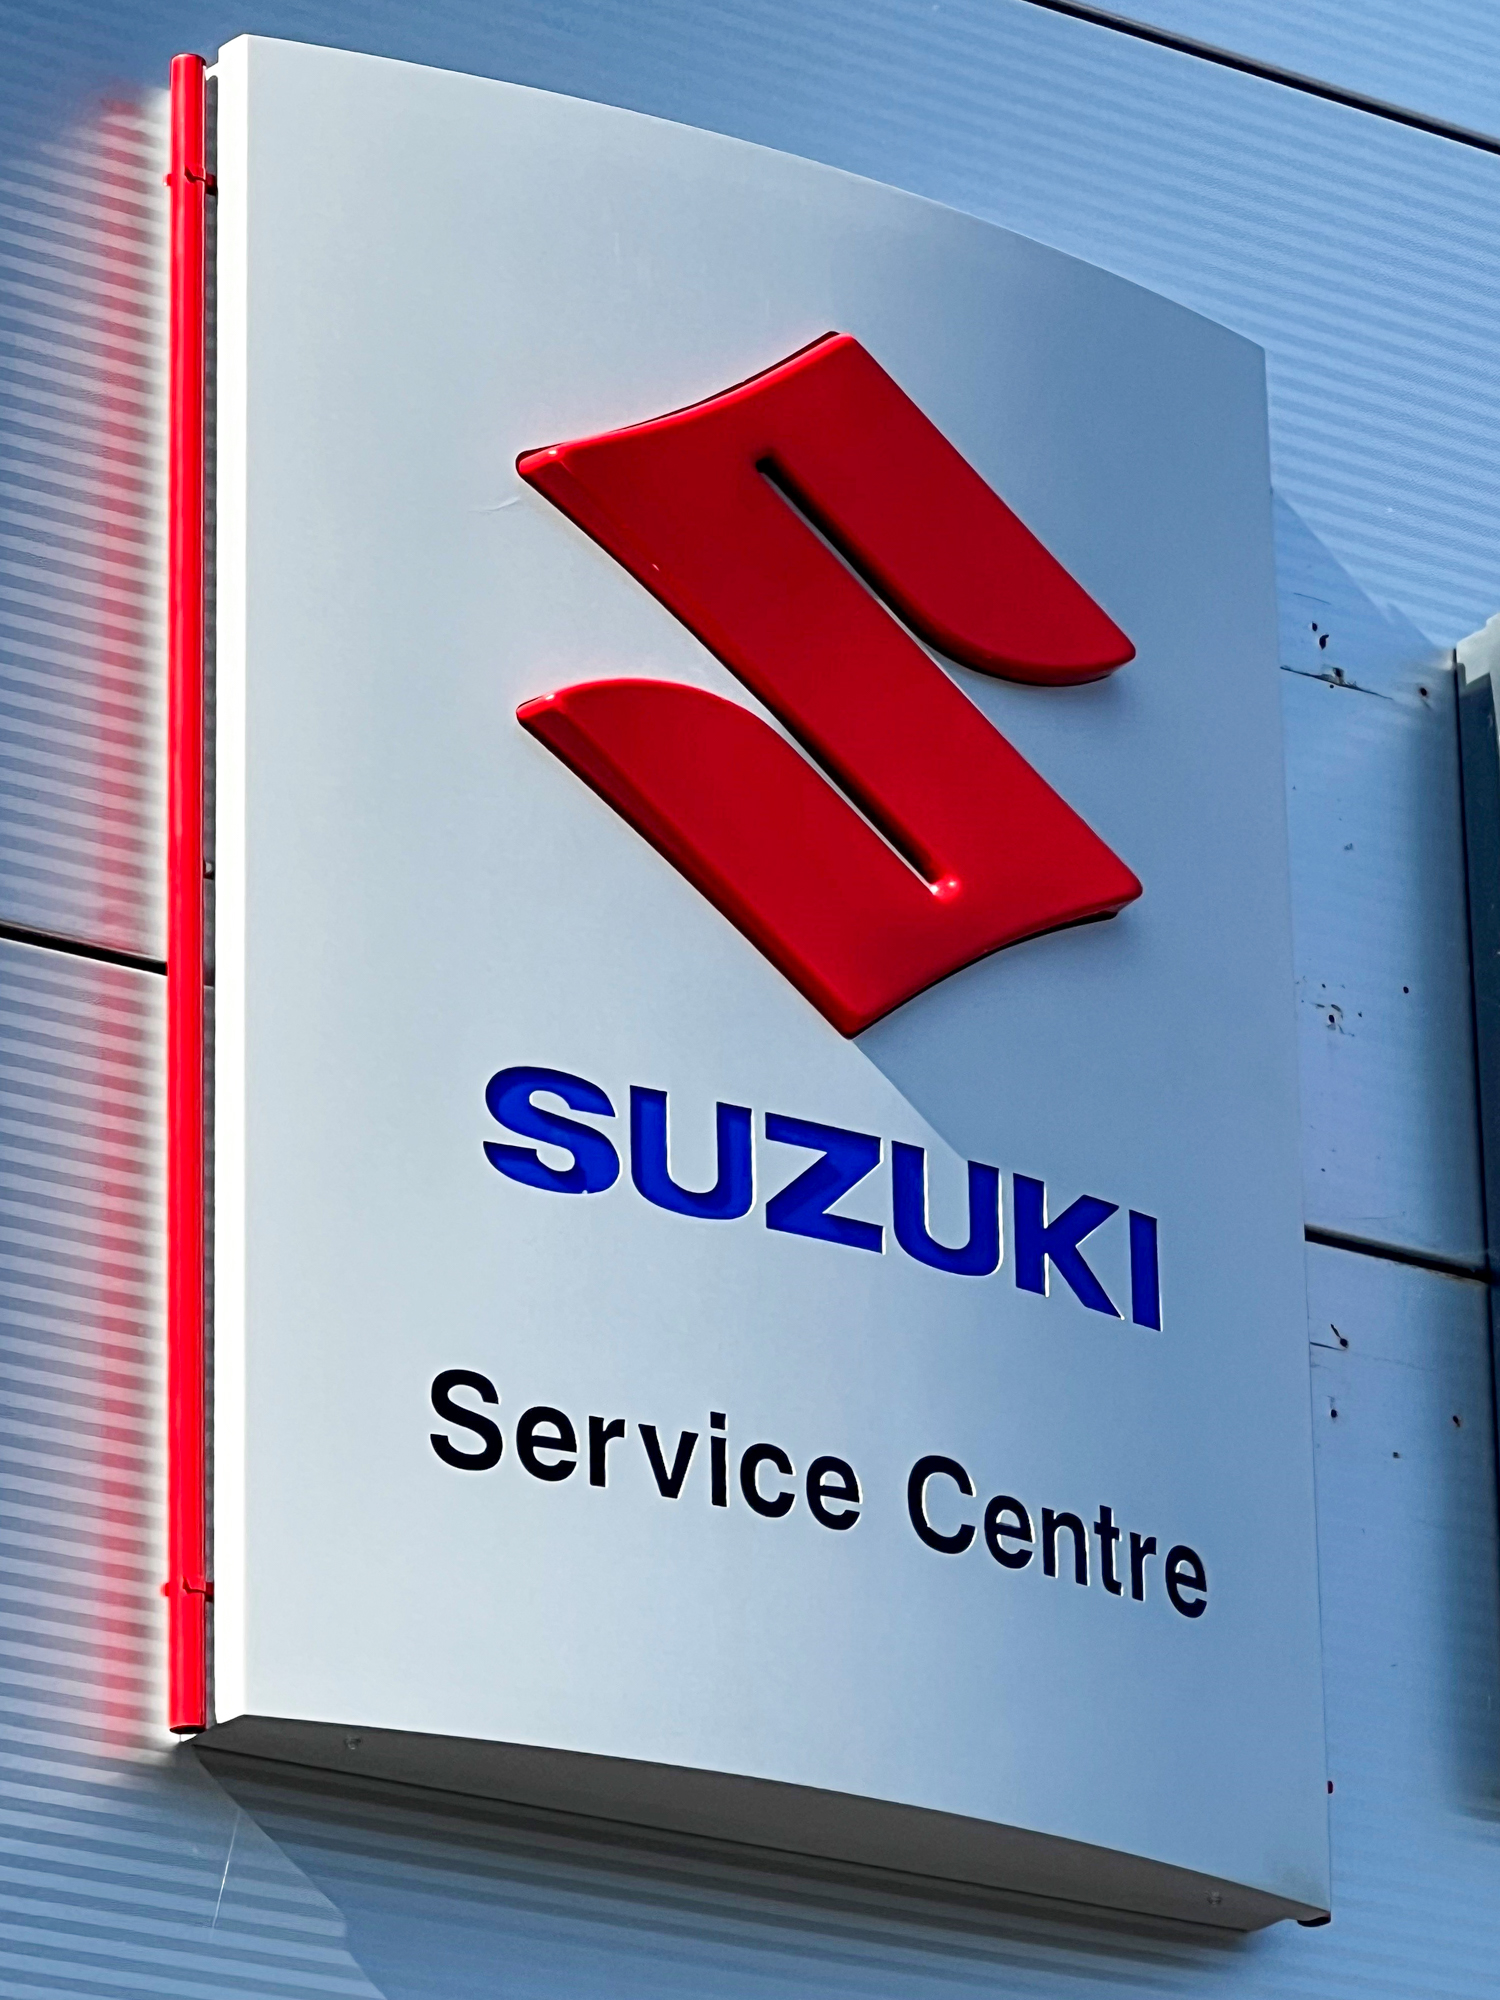 EMC Uckfield Suzuki Service Centre Sign